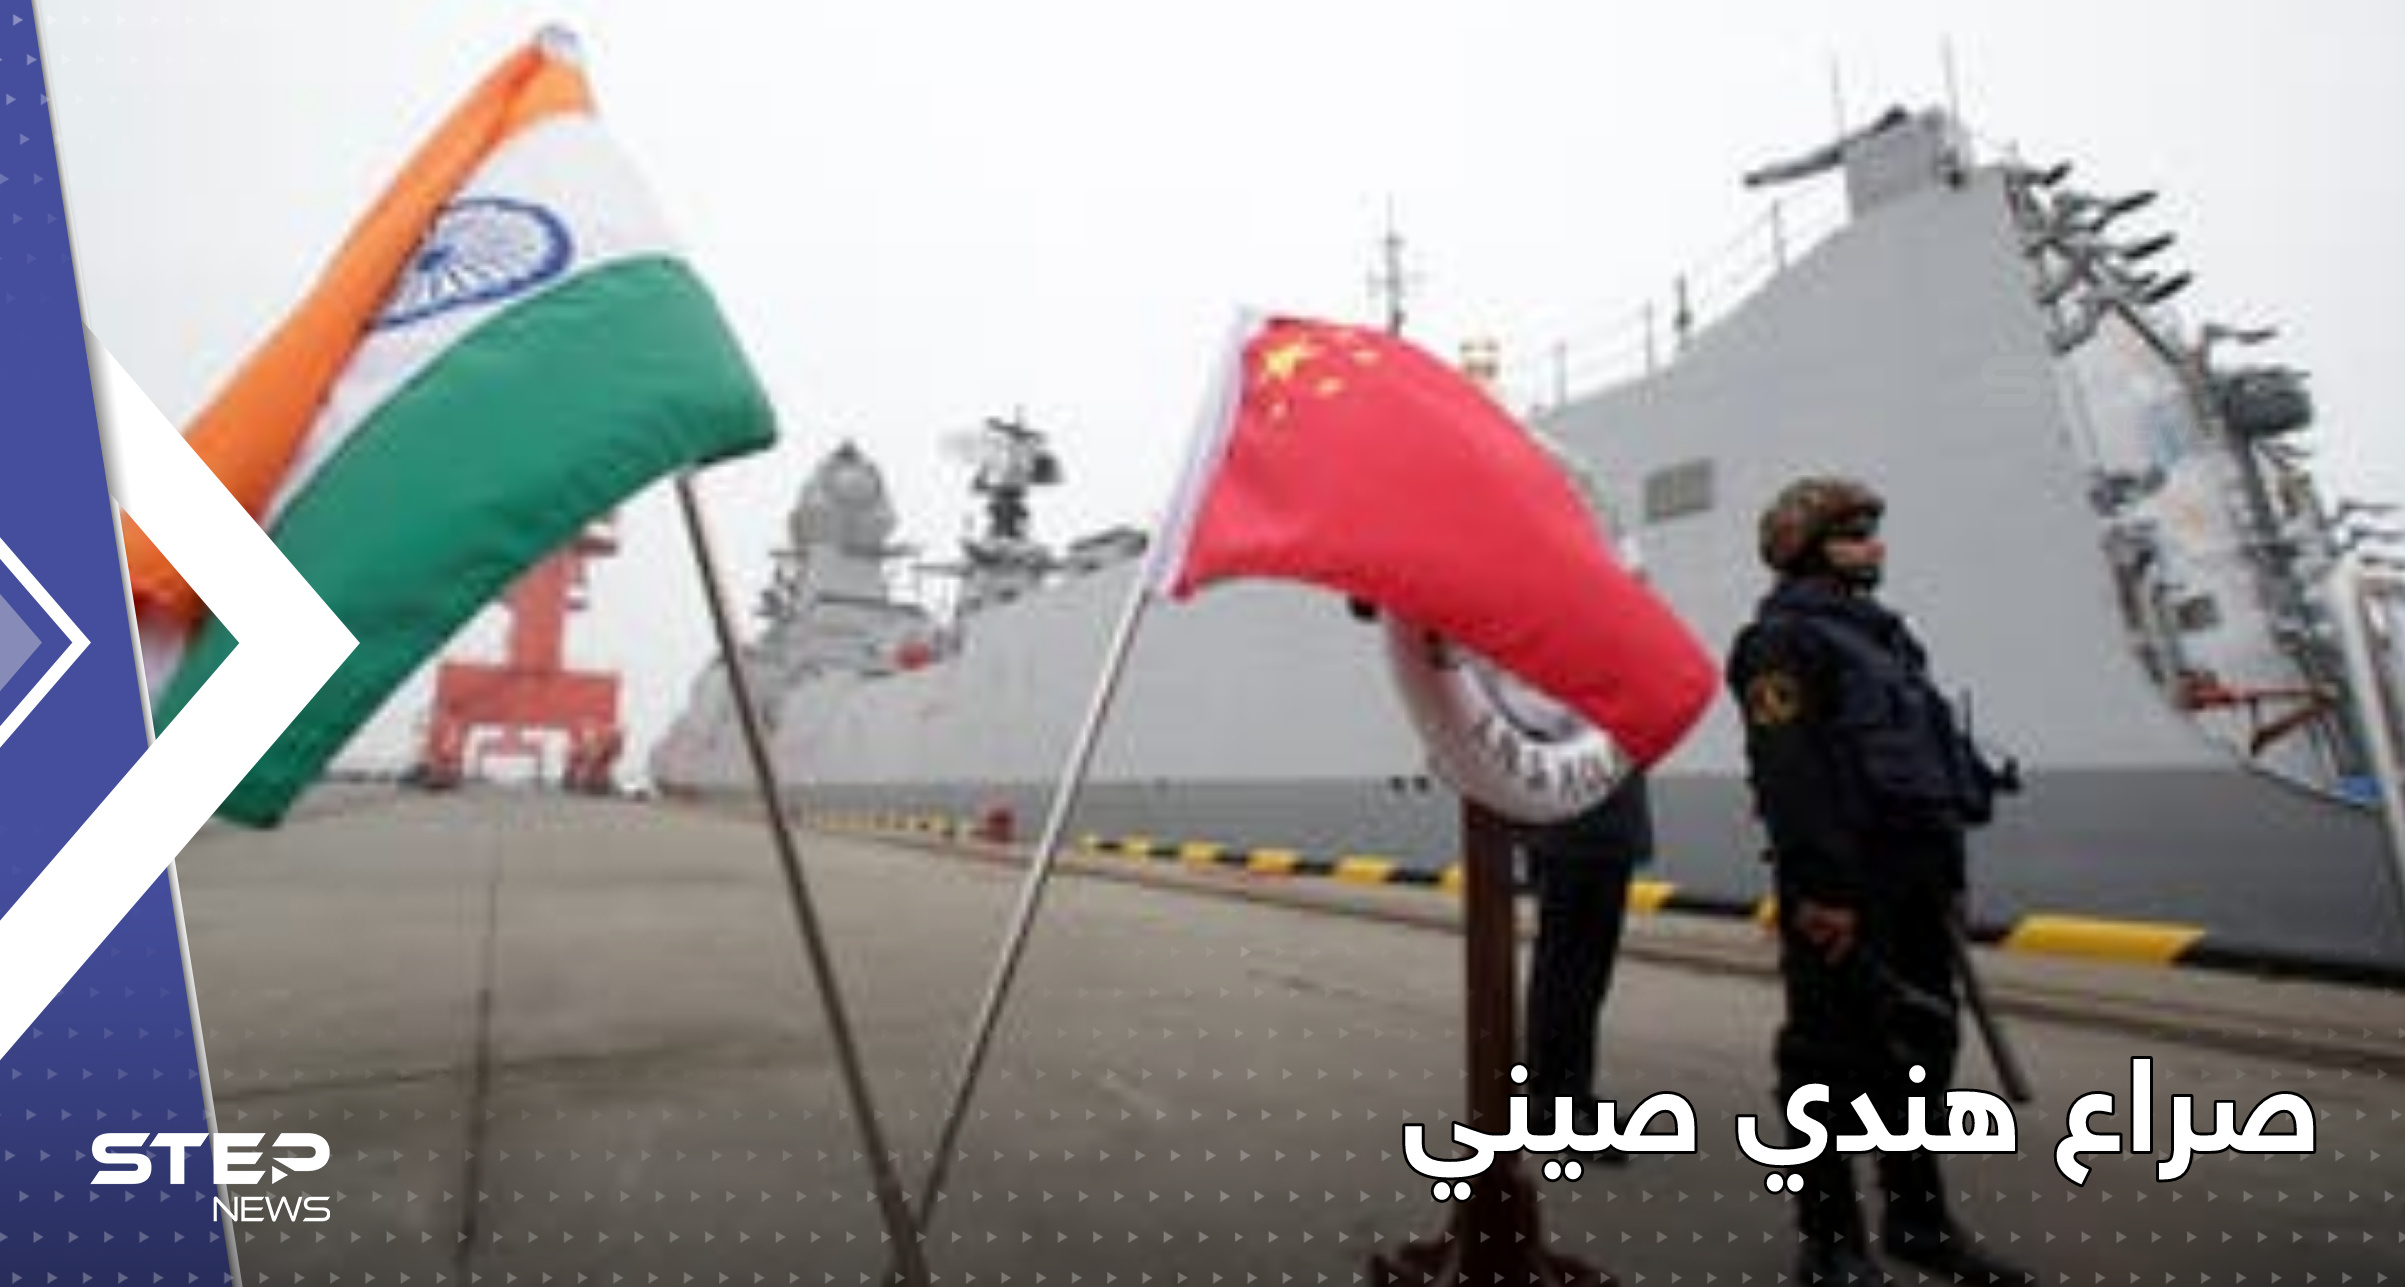 الهند والصين تتبادلان اتهامات بـ"عسكرة" المنطقة.. صراع محتدم على دولة ثالثة 